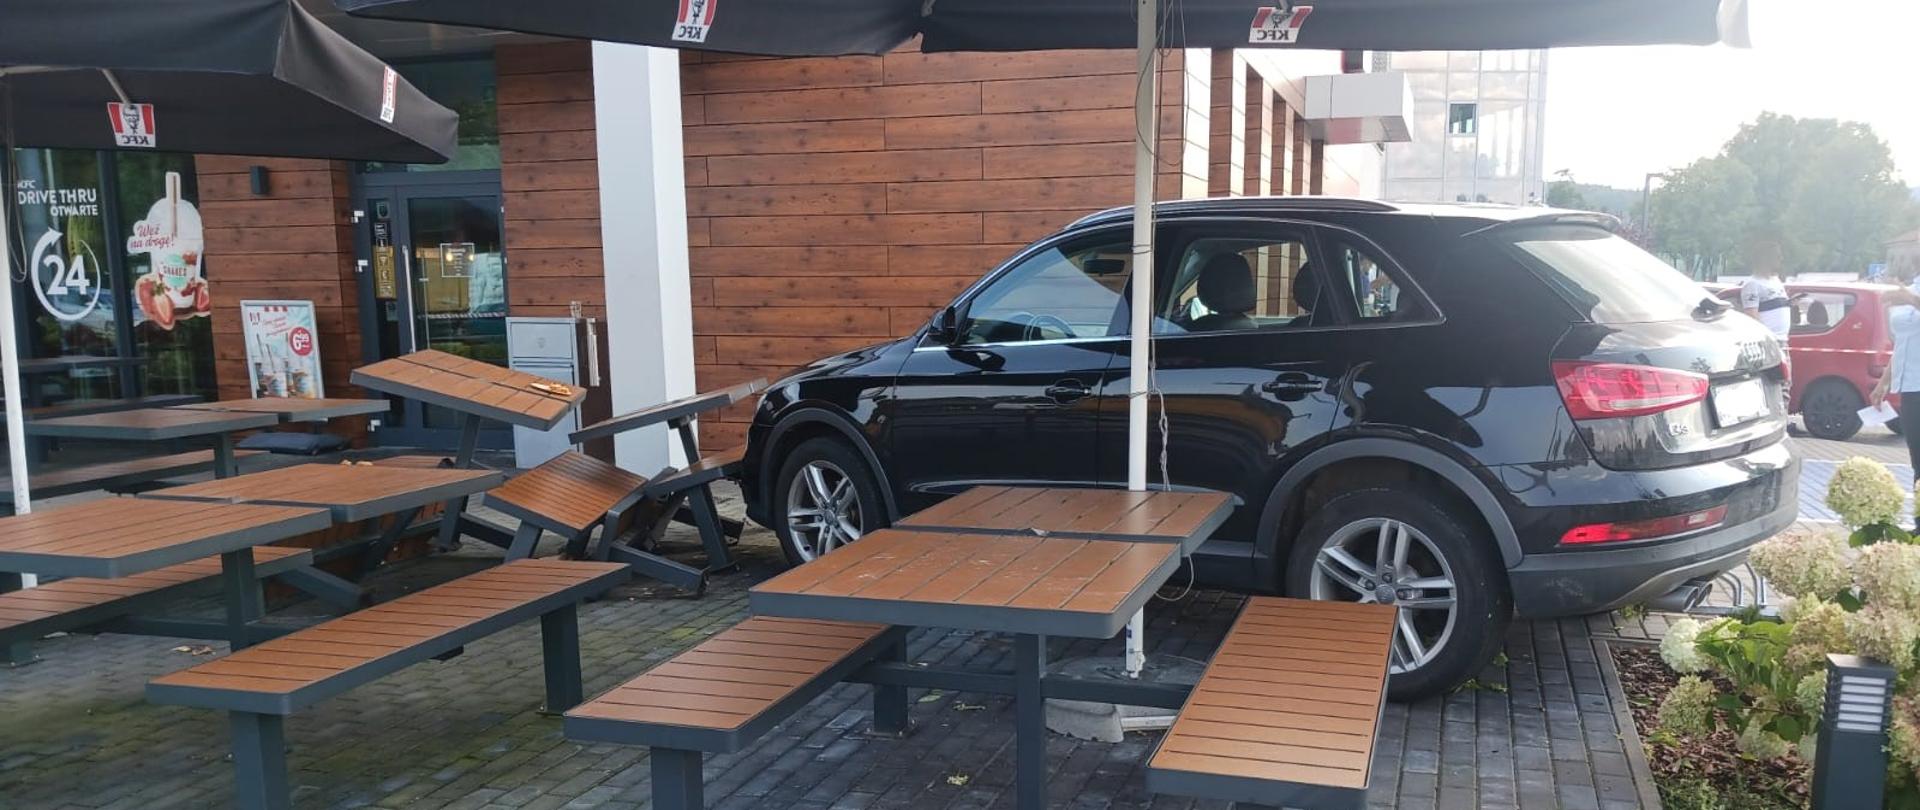 Widok z boku. Samochód osobowy w ogródku restauracyjnym. Przed samochodem przewrócone stoliki i ławki. W tle budynek restauracji. 